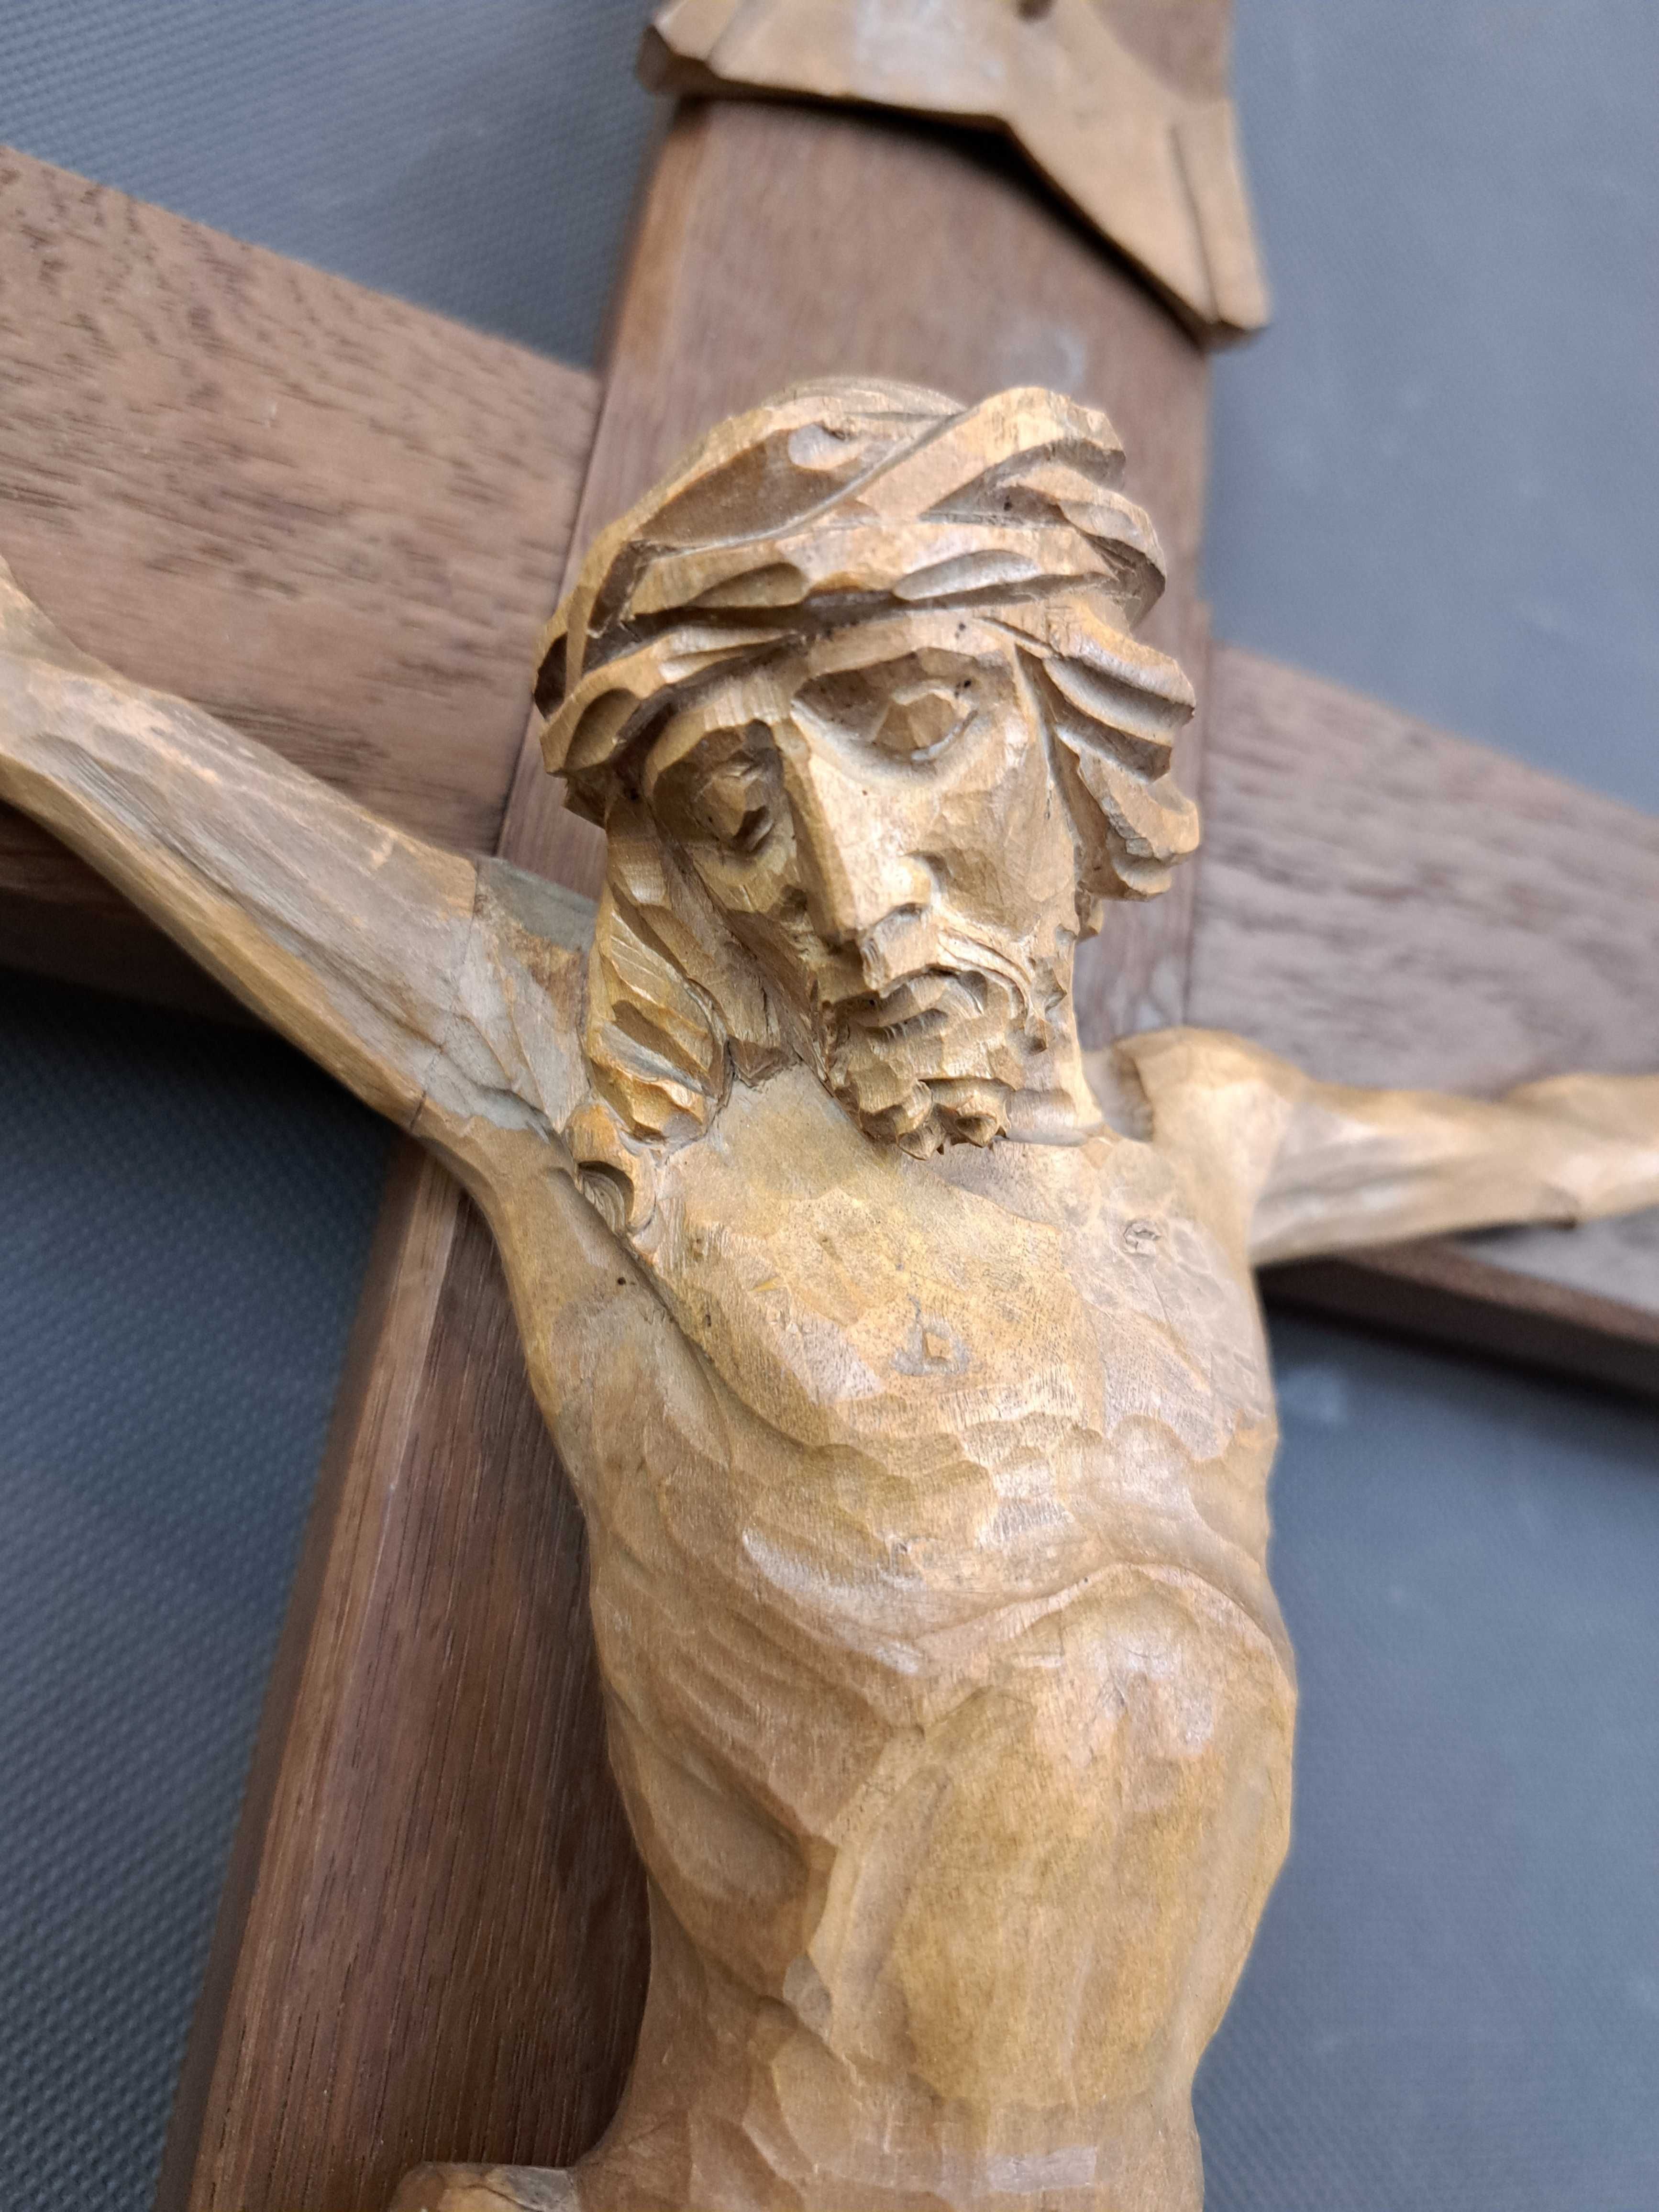 Jezus Chrystus na krzyżu, rzeźba drewniana, wys. 50 cm